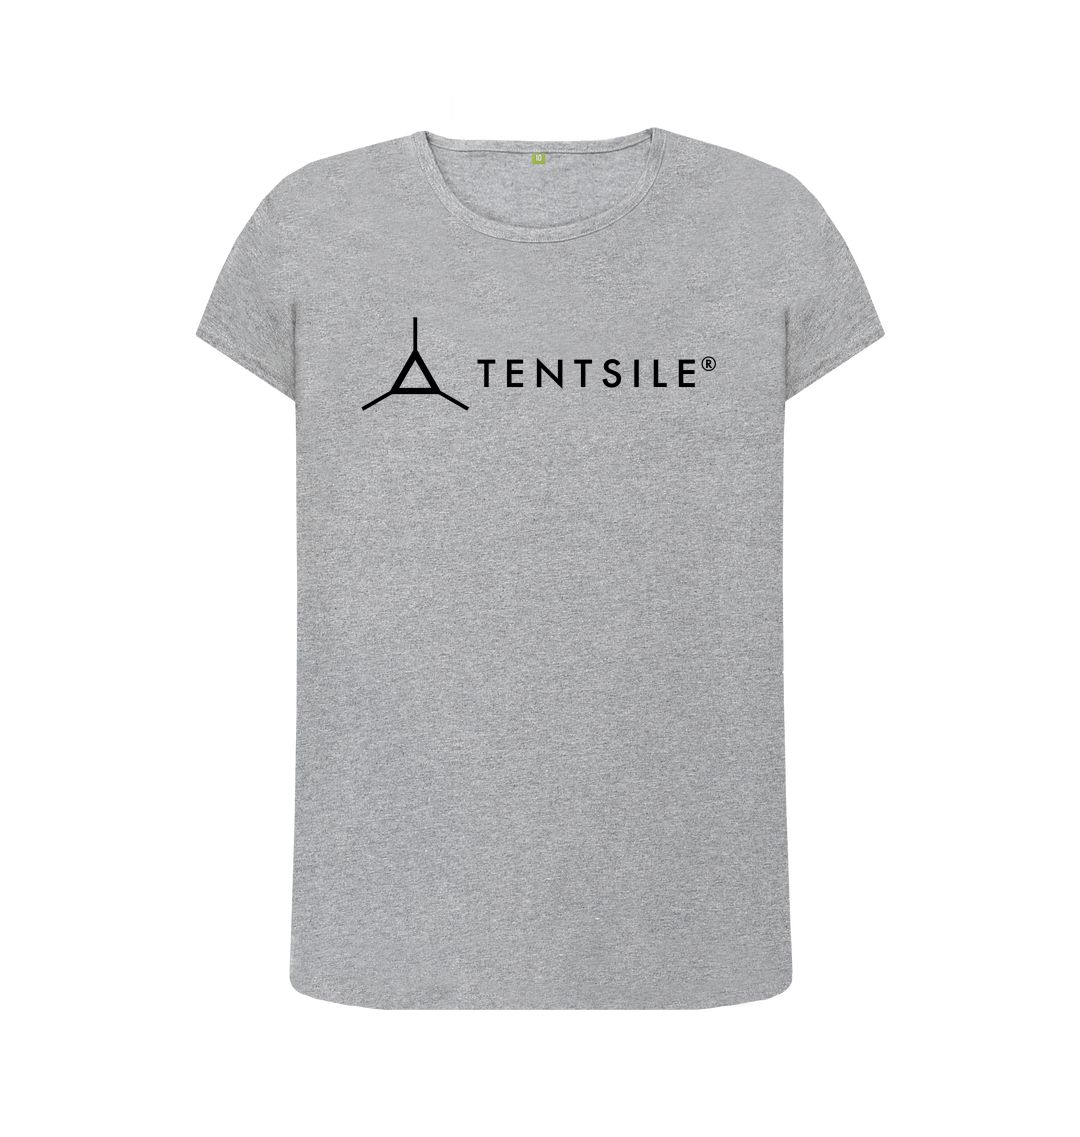 Athletic Grey Tentsile Crew Neck Logo Tee - Female (6613439873097)